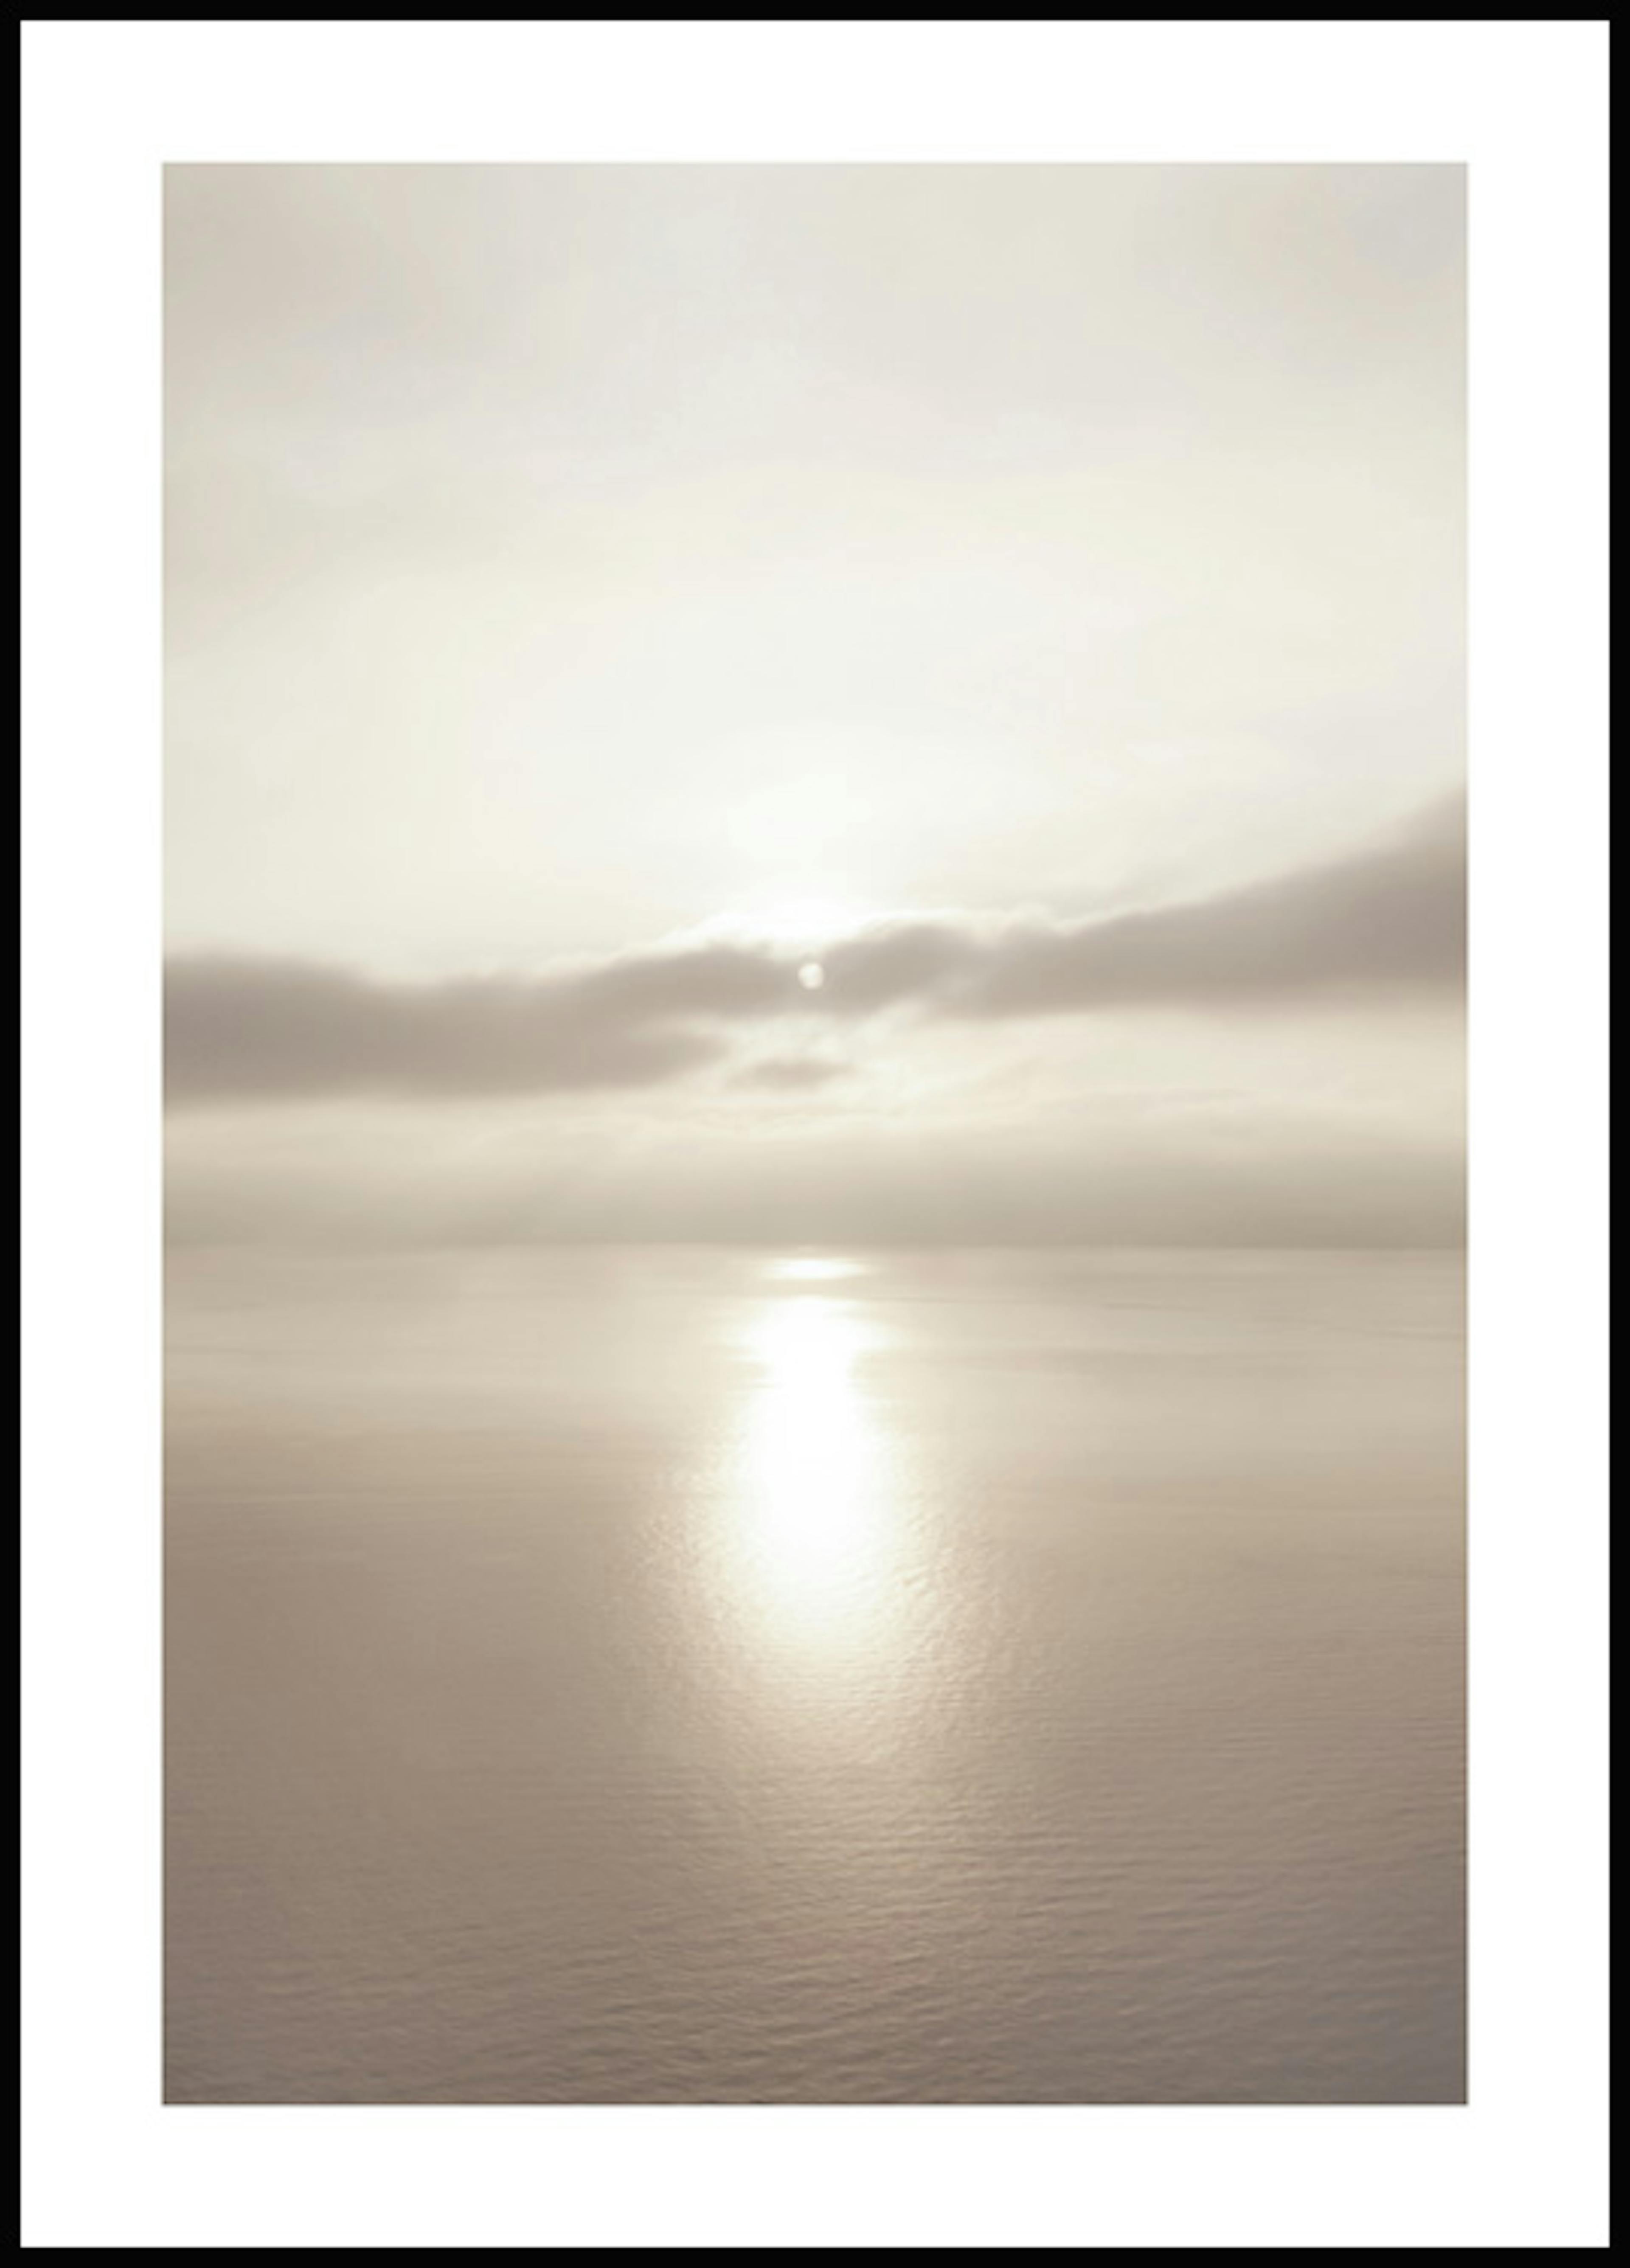 لوحة لصورة غروب الشمس في المحيط 0